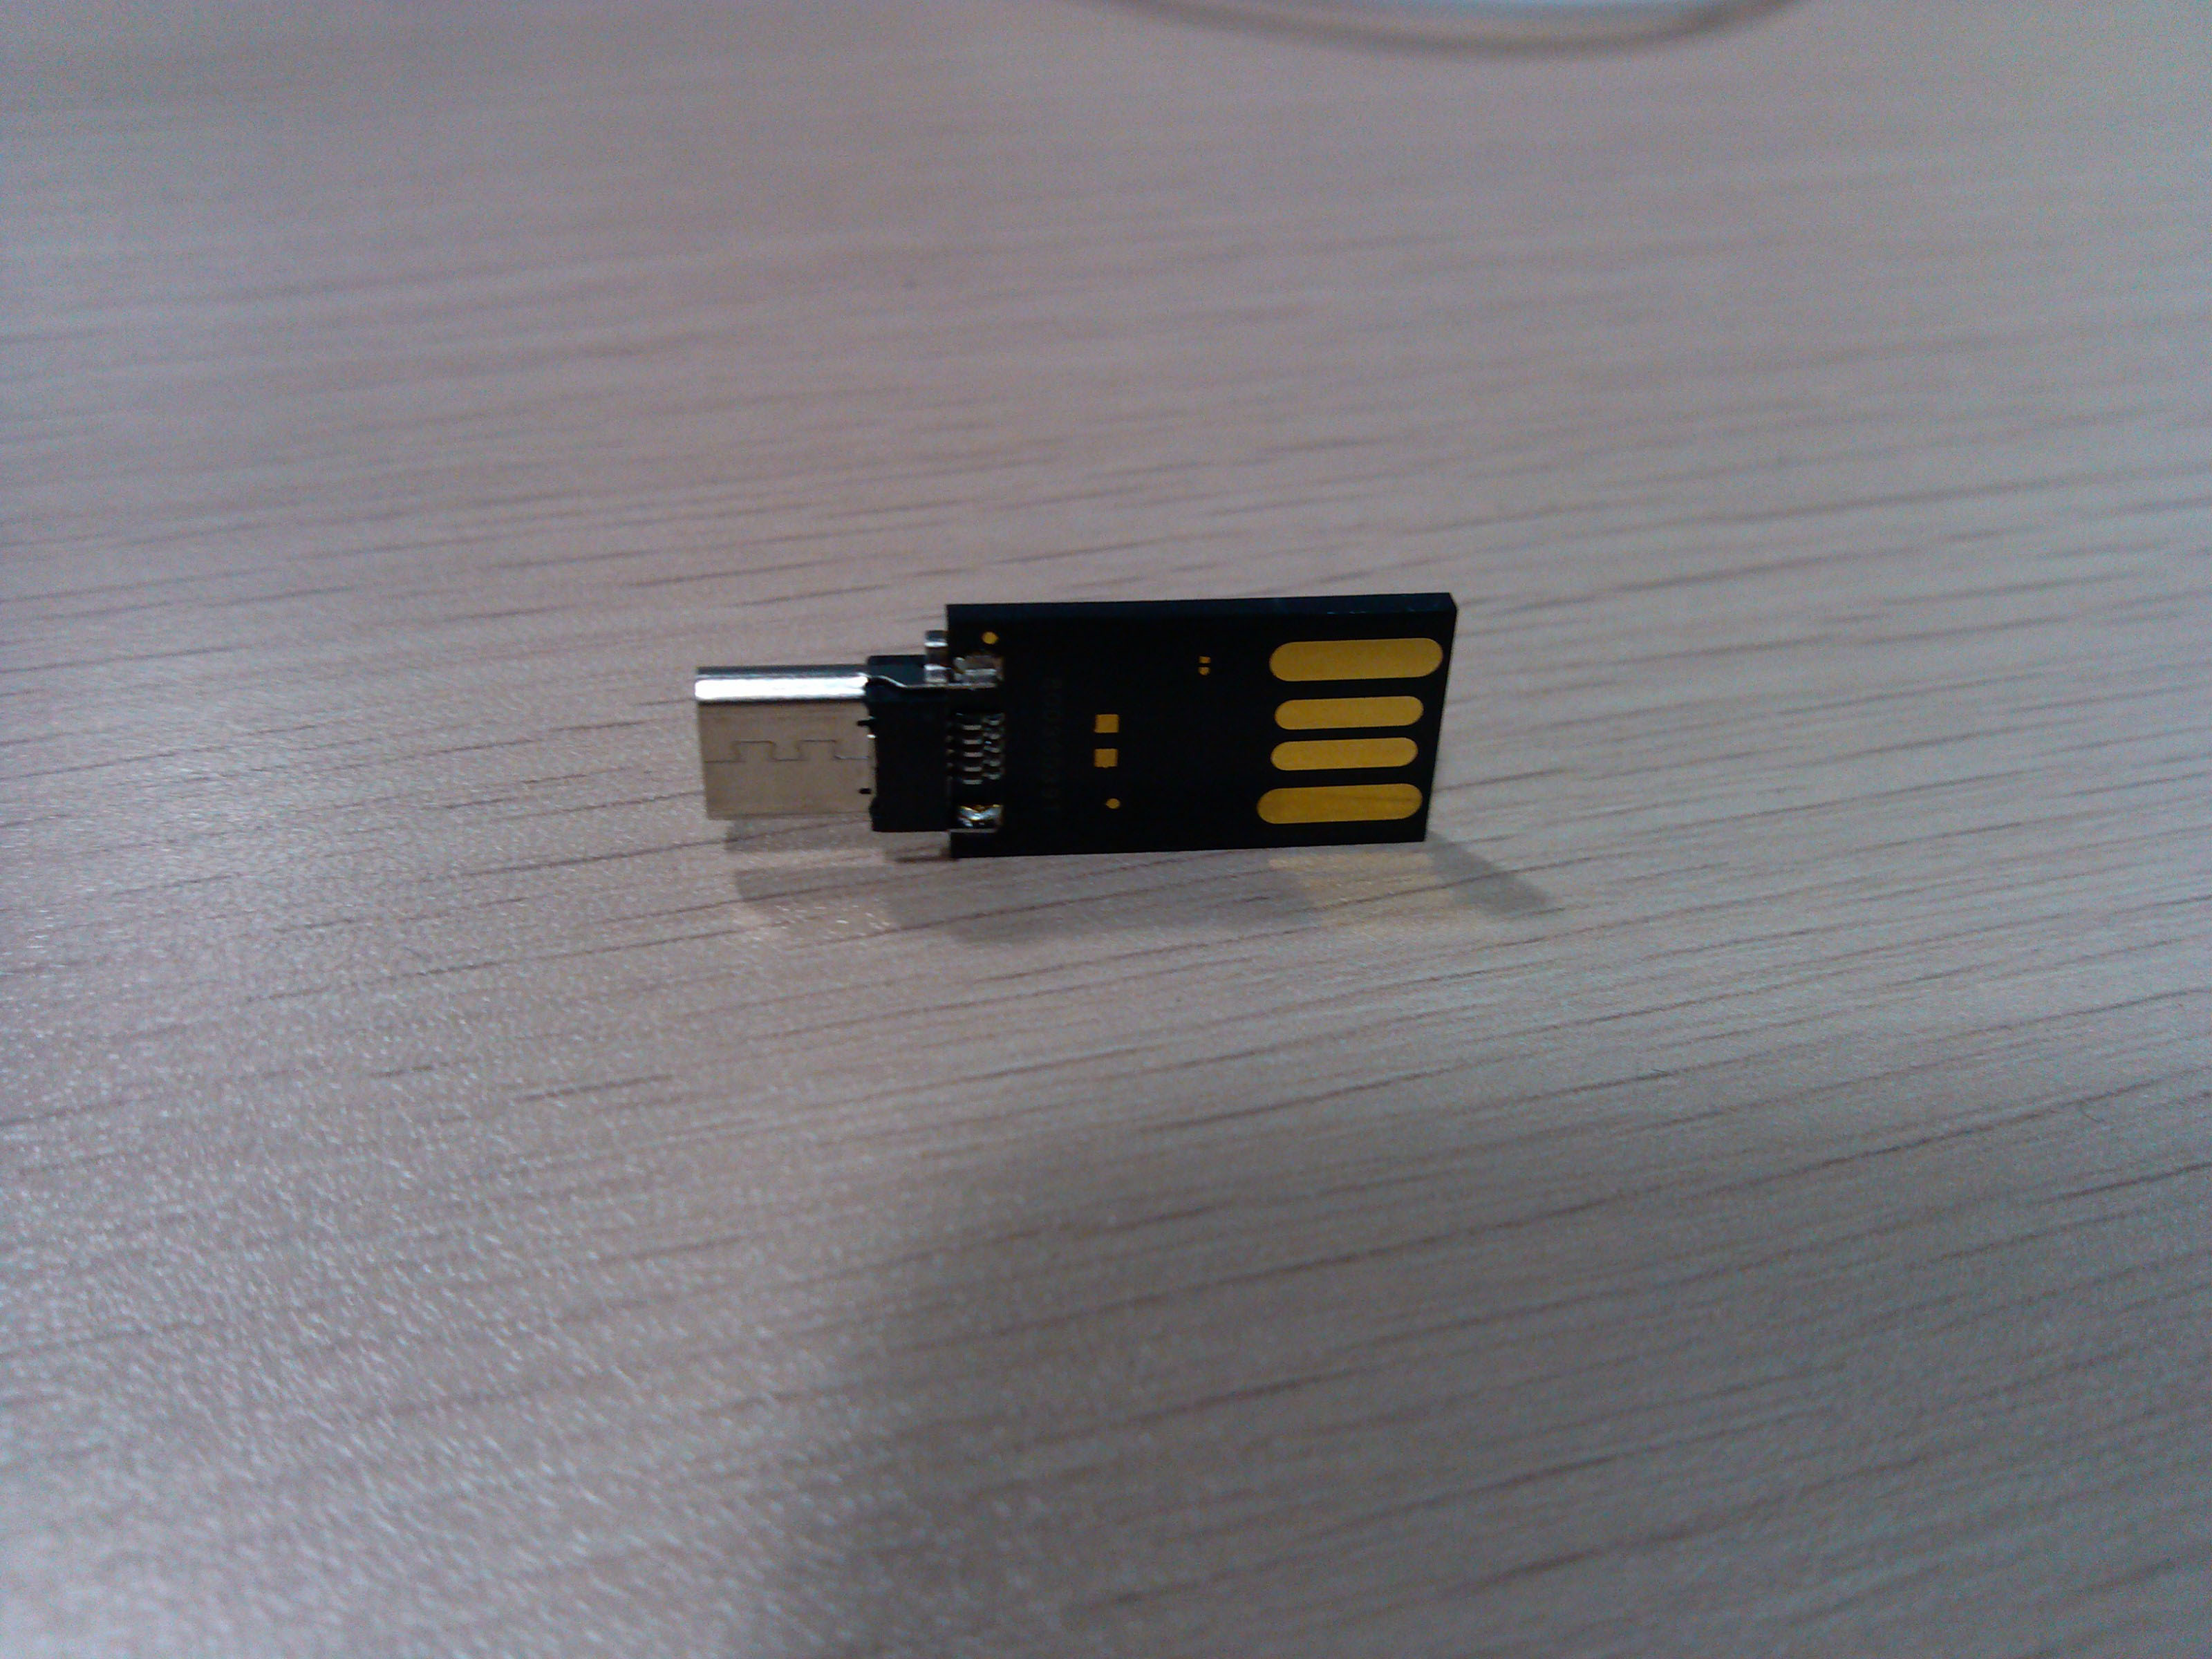 OTG USB